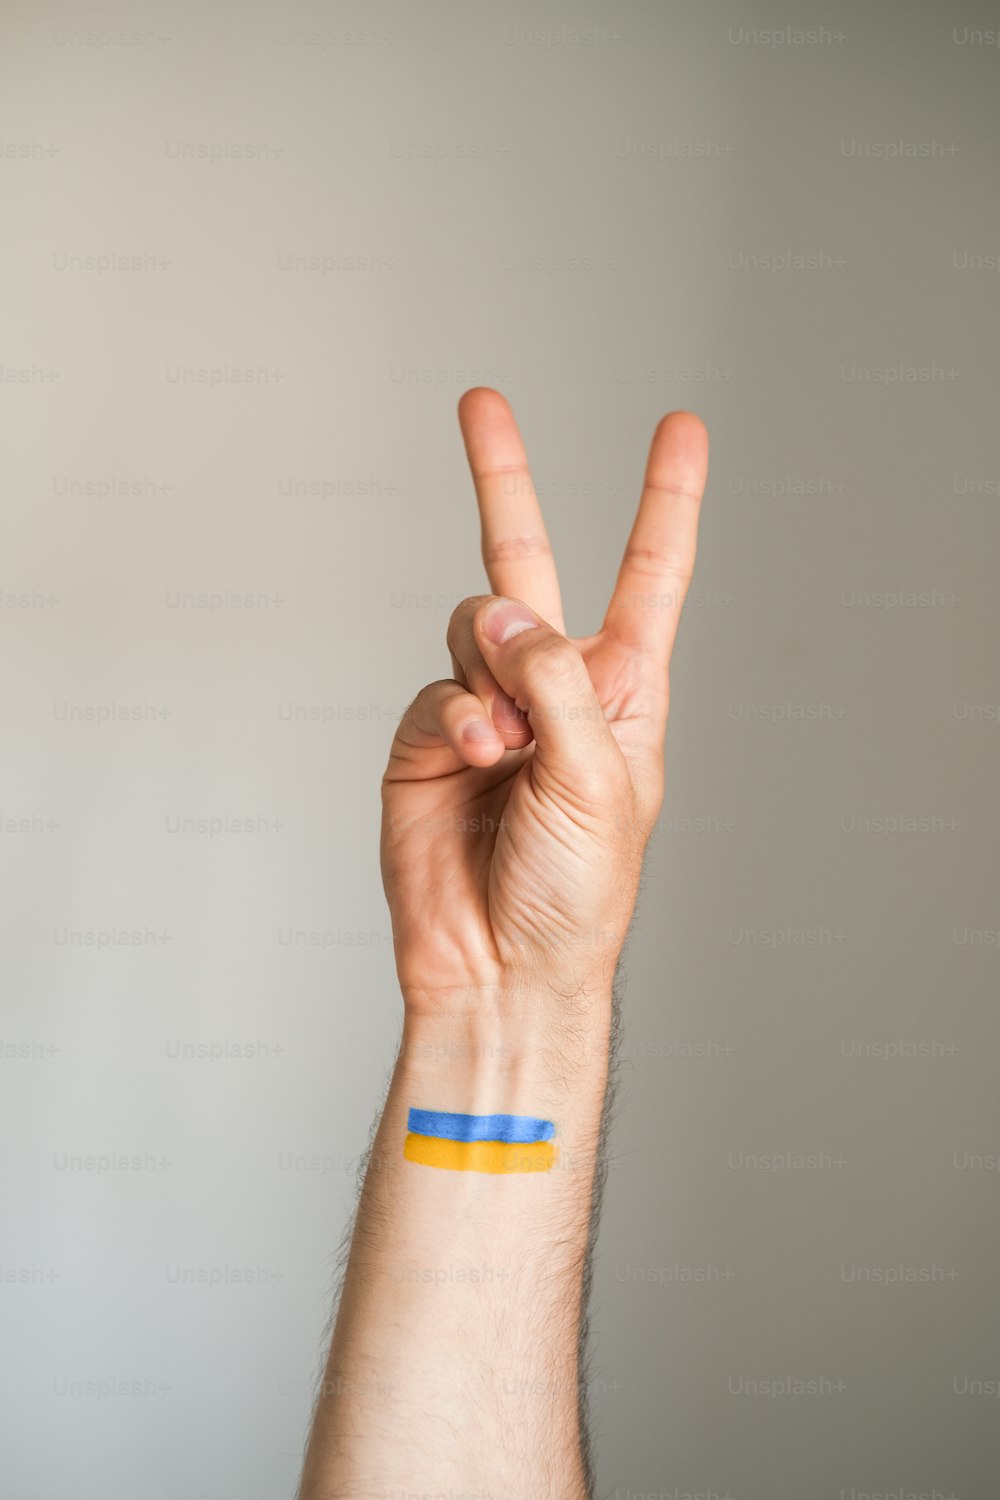 eine Person, die mit ihrer Hand ein Peace-Zeichen macht